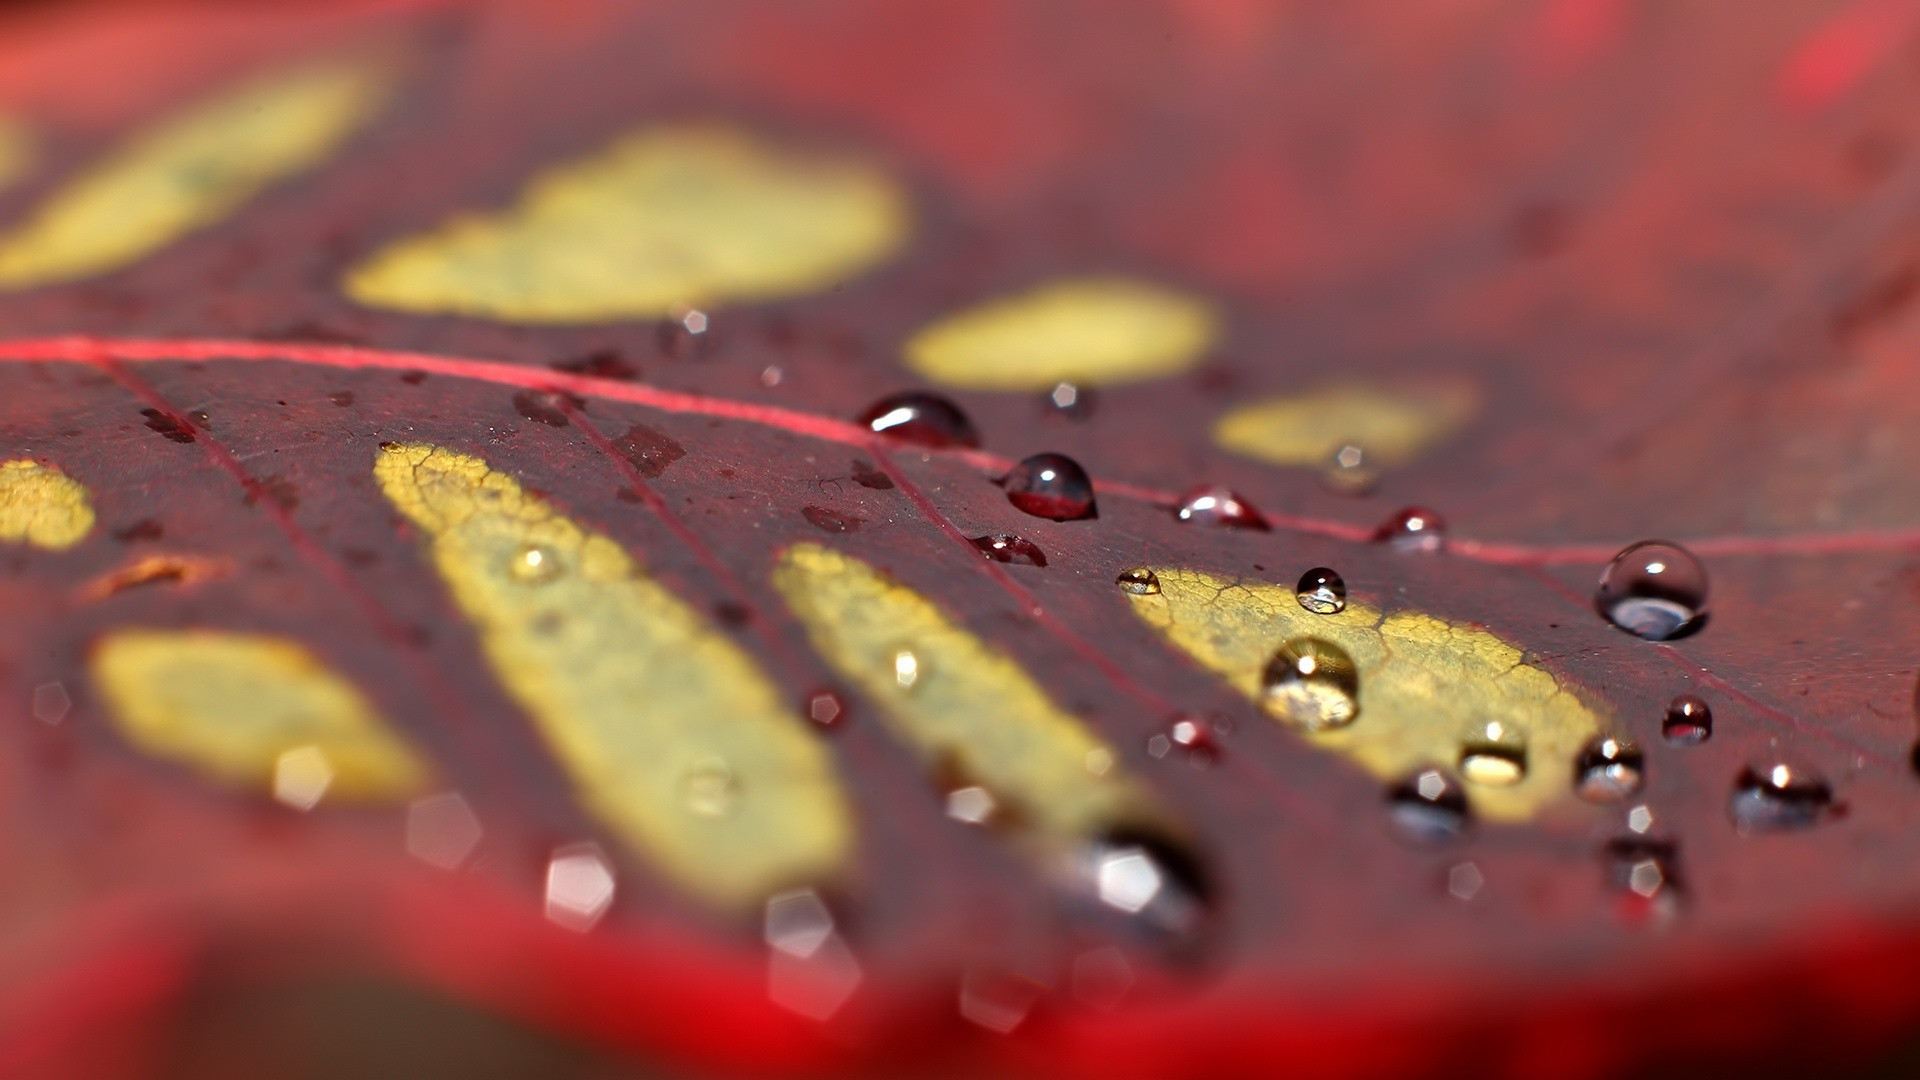 有雨滴的红枫树叶